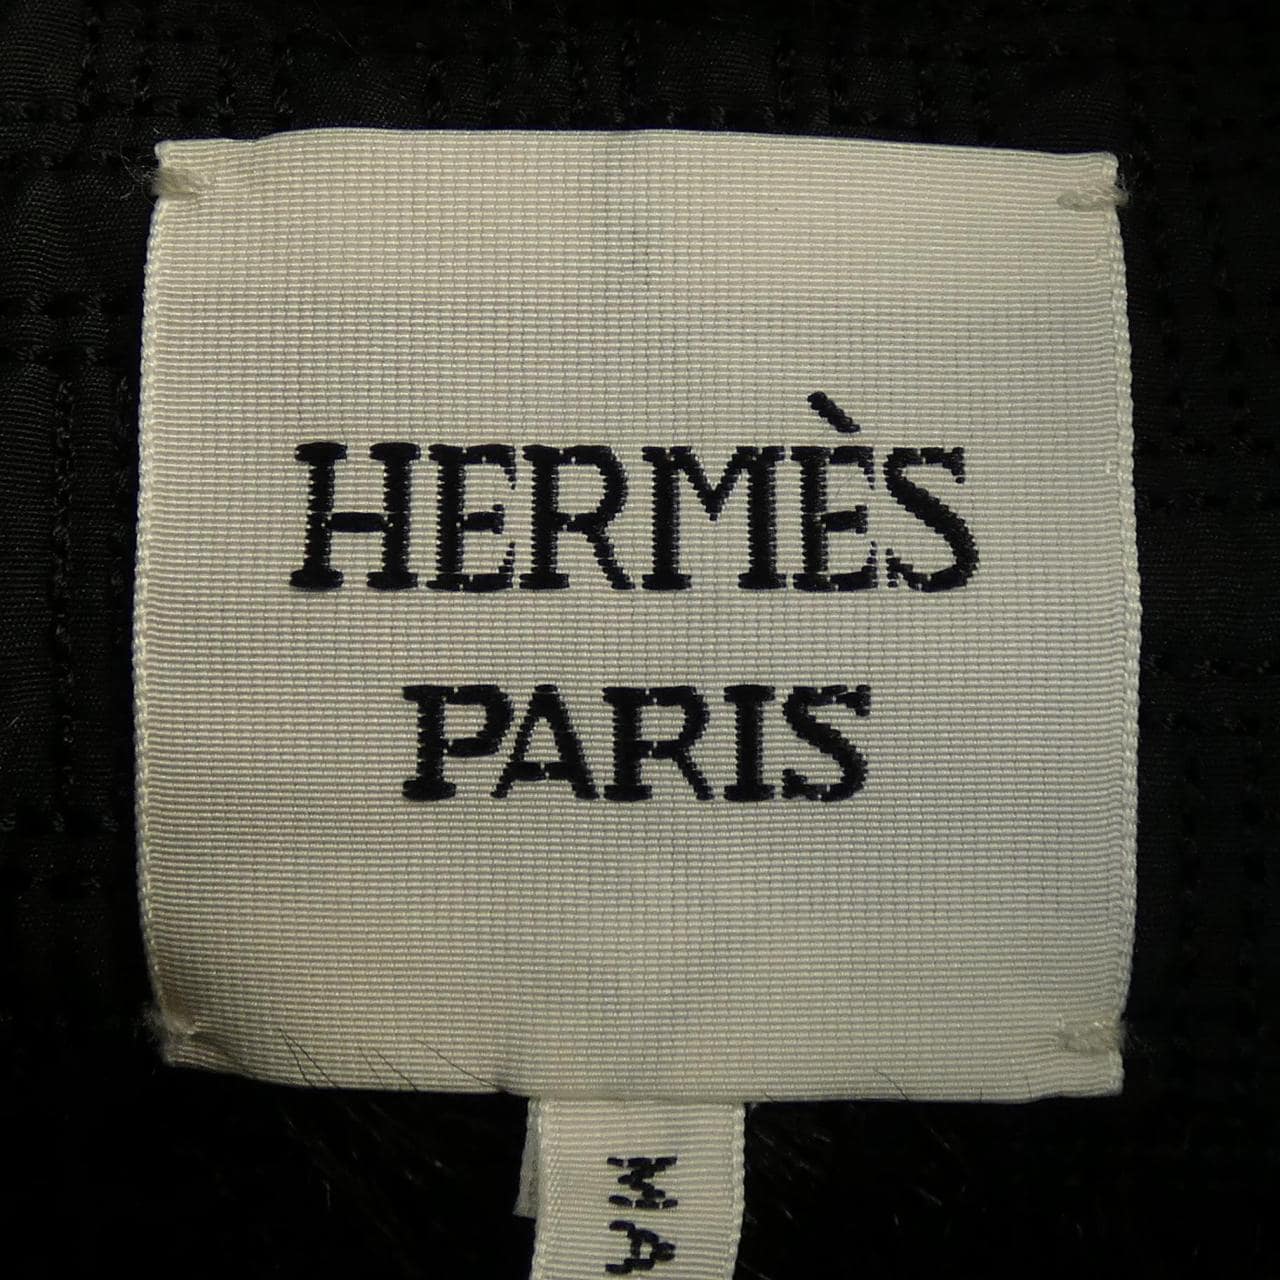 HERMES HERMES Kegawa Best